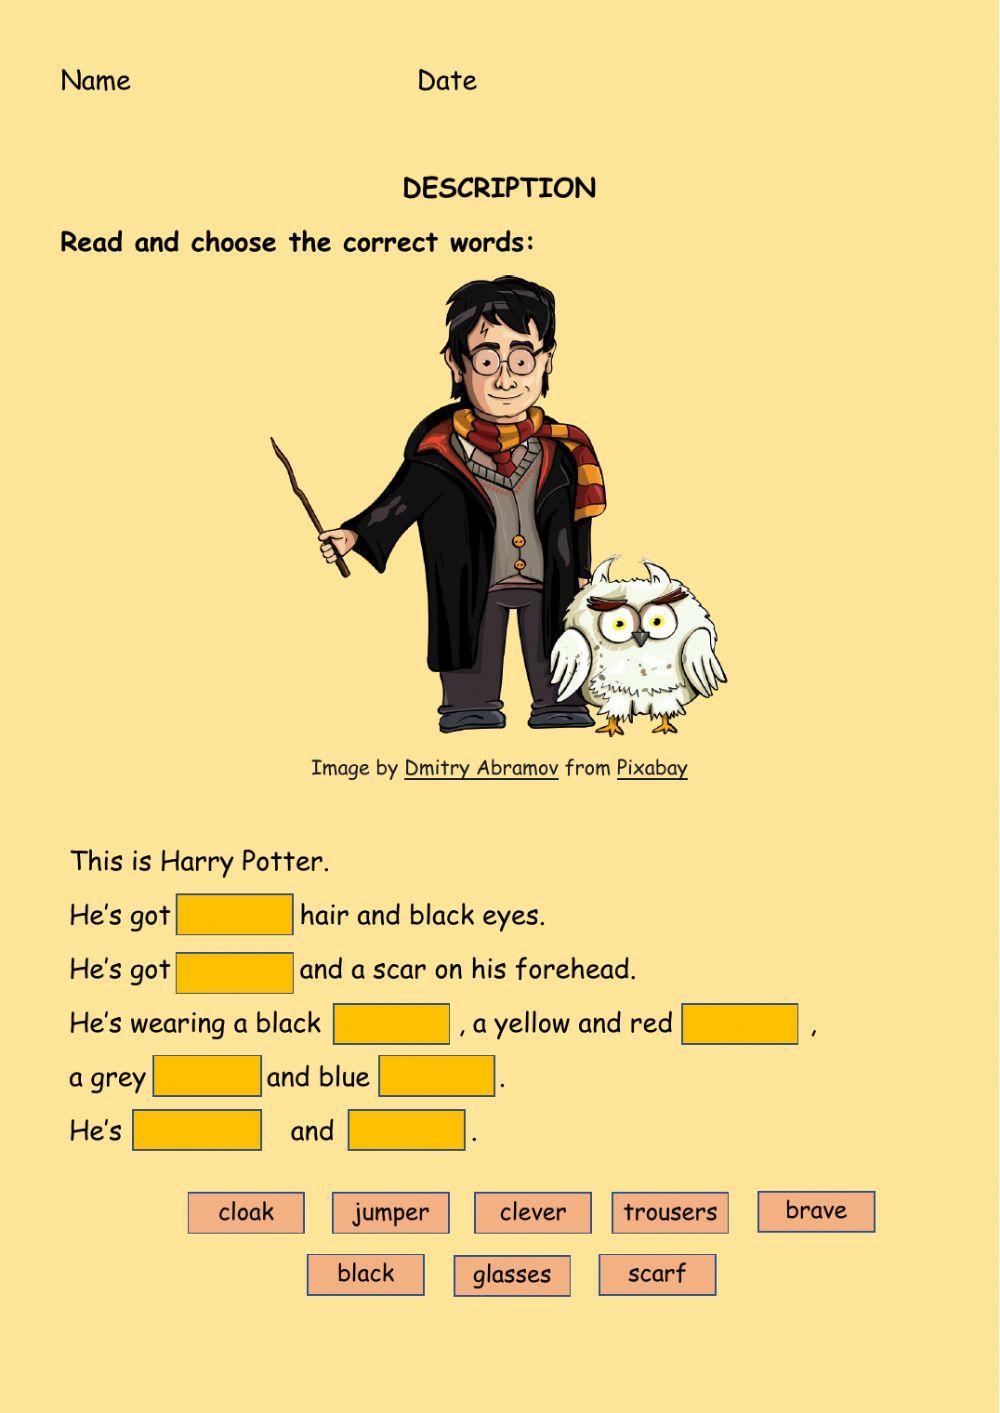 Harry Potter description